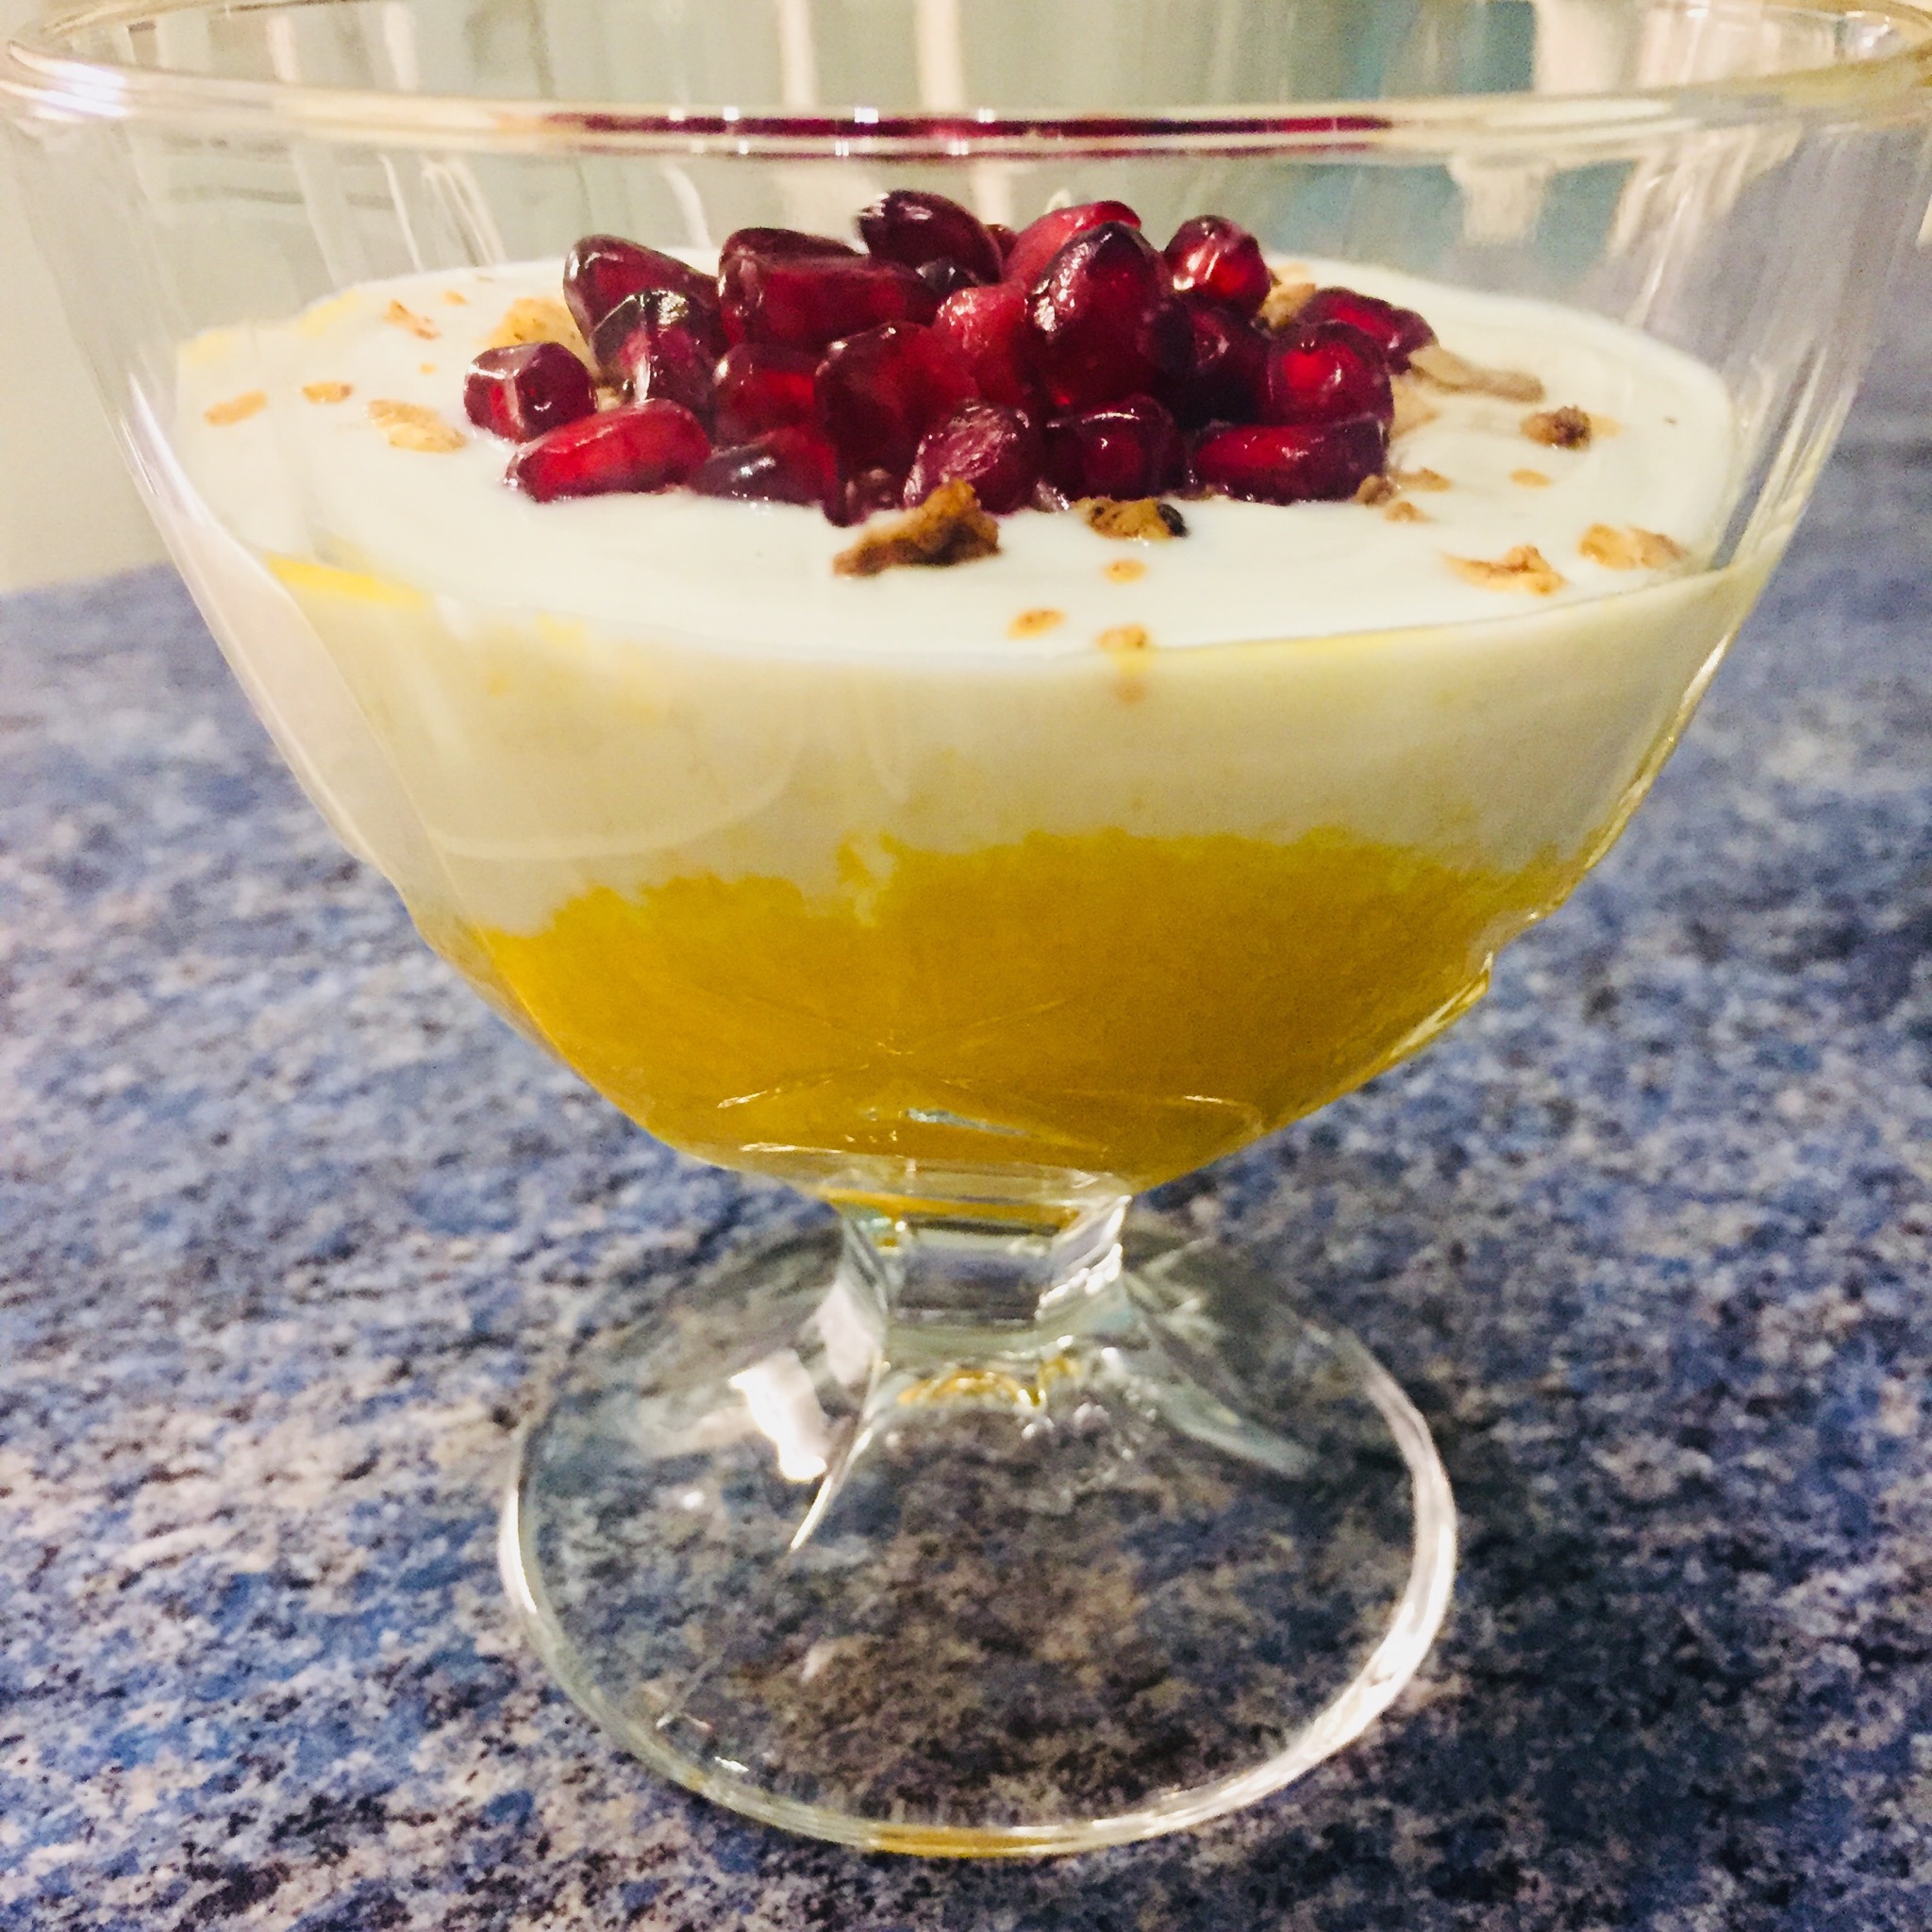 Mango-Joghurt-Dessert mit Kokos-Granola-Topping und Granatapfelkernen ...